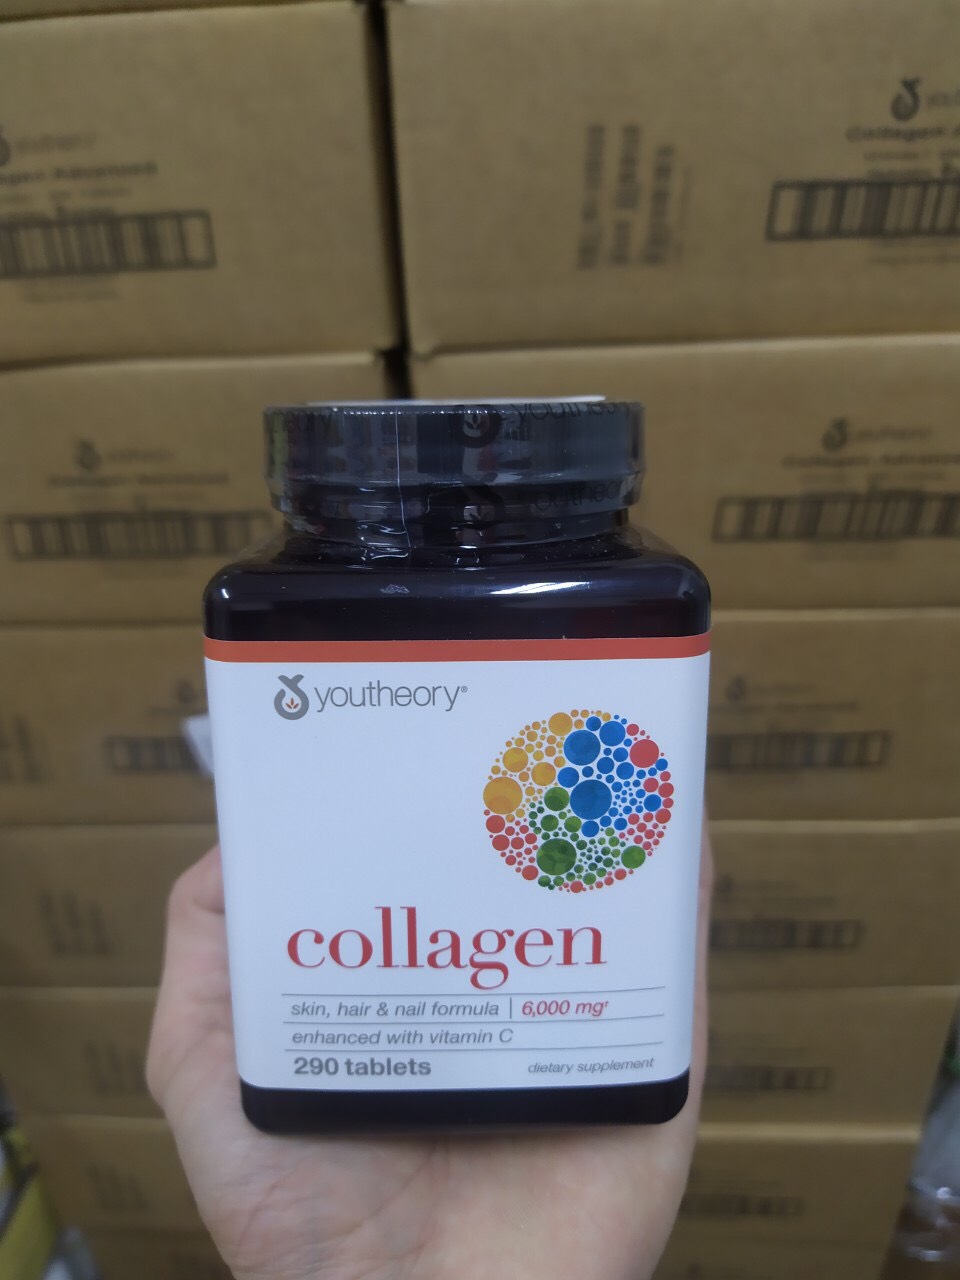 Collagen Youtheory Mỹ chứa collagen, vitamin c, biotin… tạo sức khỏe và sắc đẹp từ bên trong cho da, tóc, móng, sụn, gân, dây chằng, khớp - Massel Official